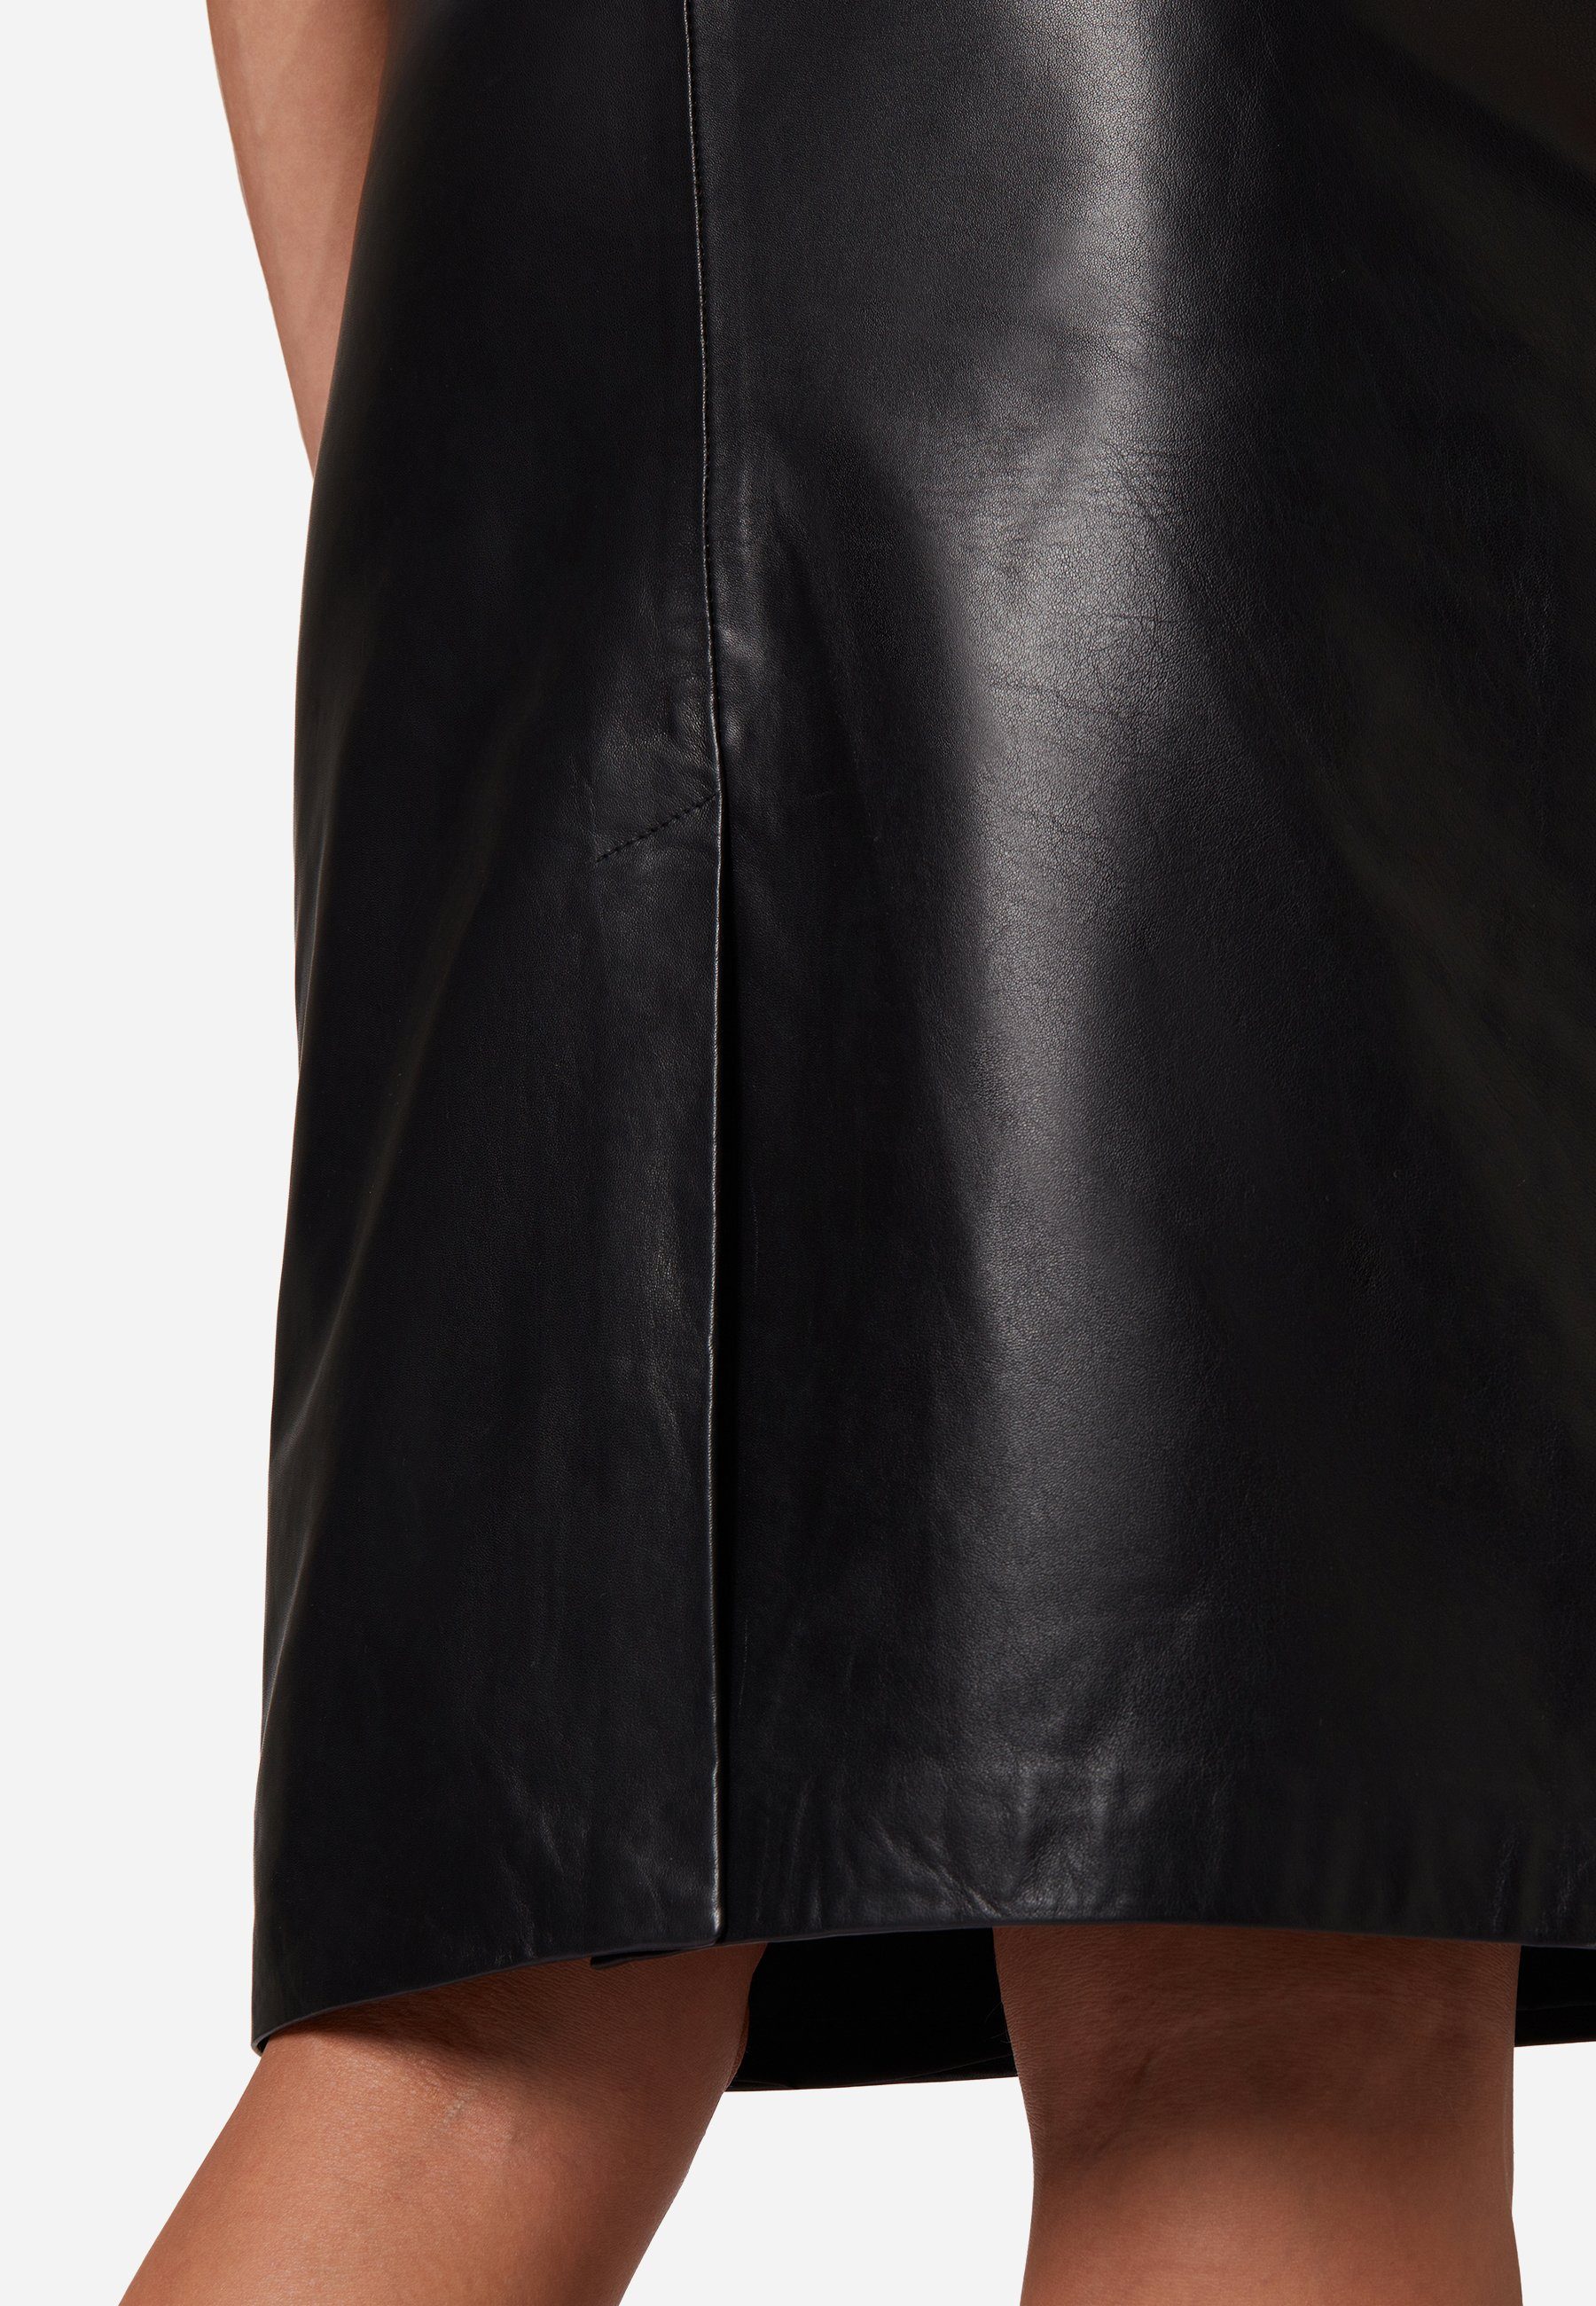 RICANO Lederrock Lammleder 095 hochwertiges Skirt